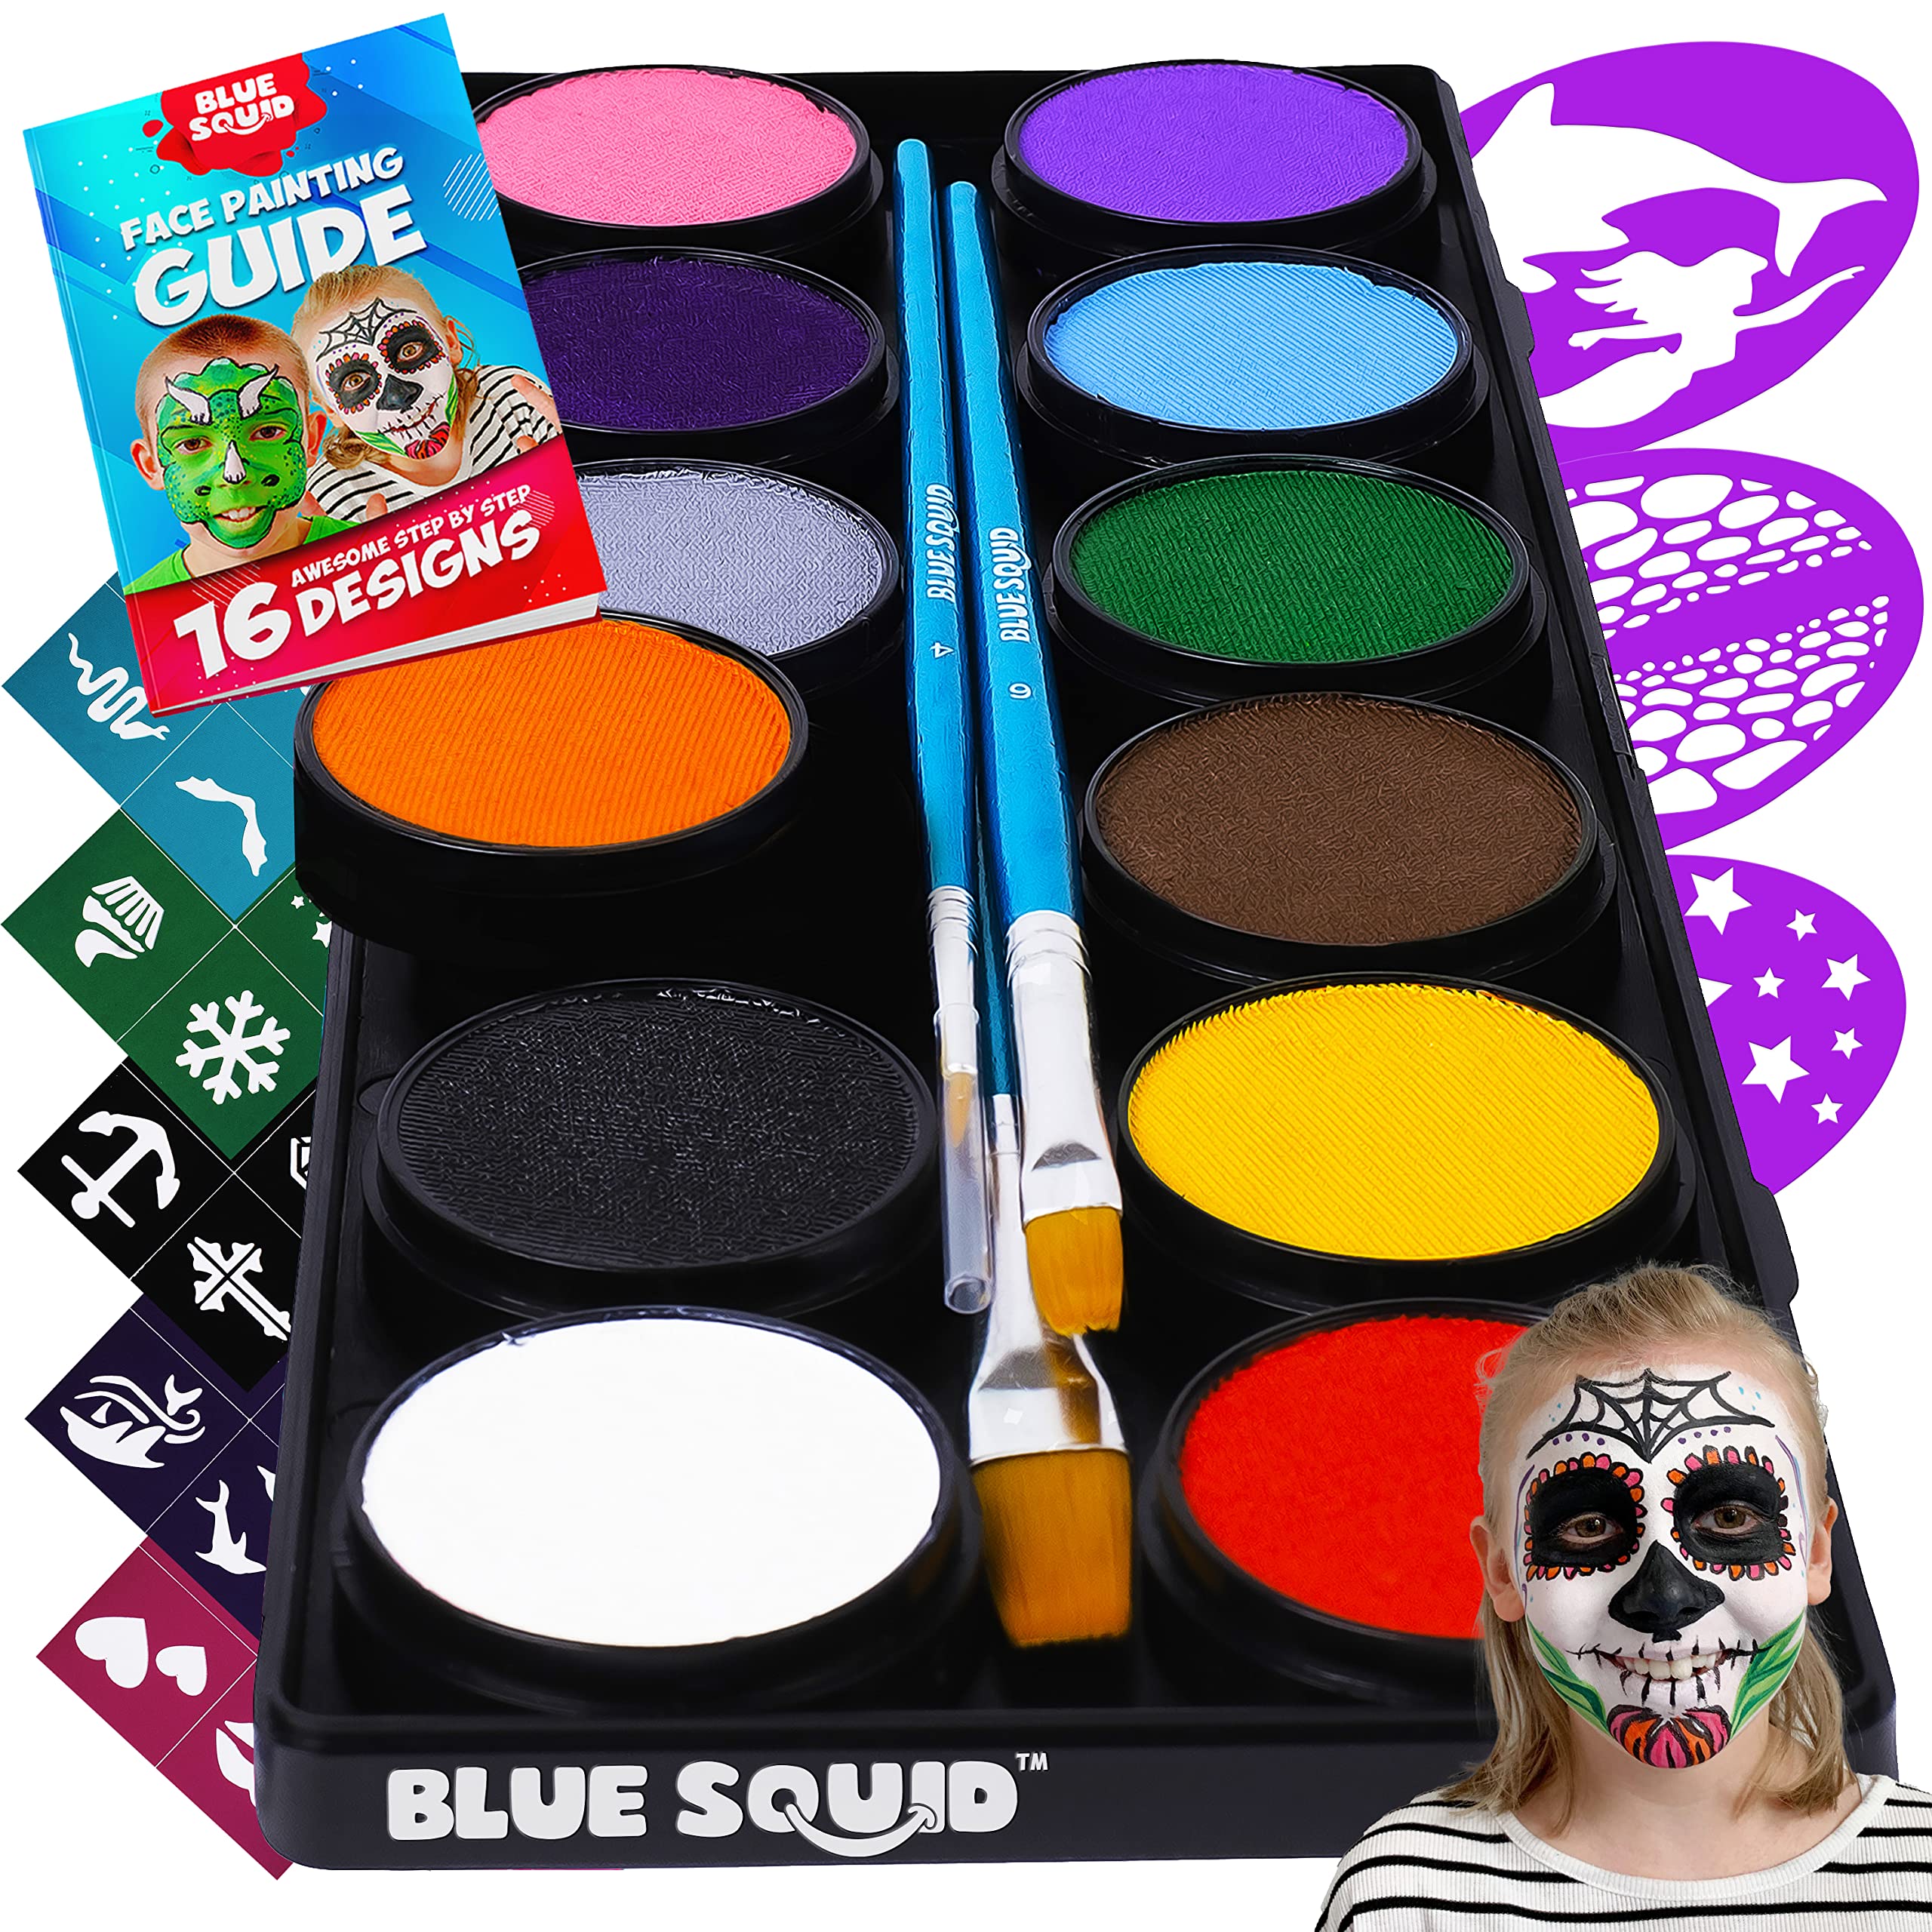 Blue Squid Face Paint Kit for Kids 12 Color Palette, 30+3 Stencils